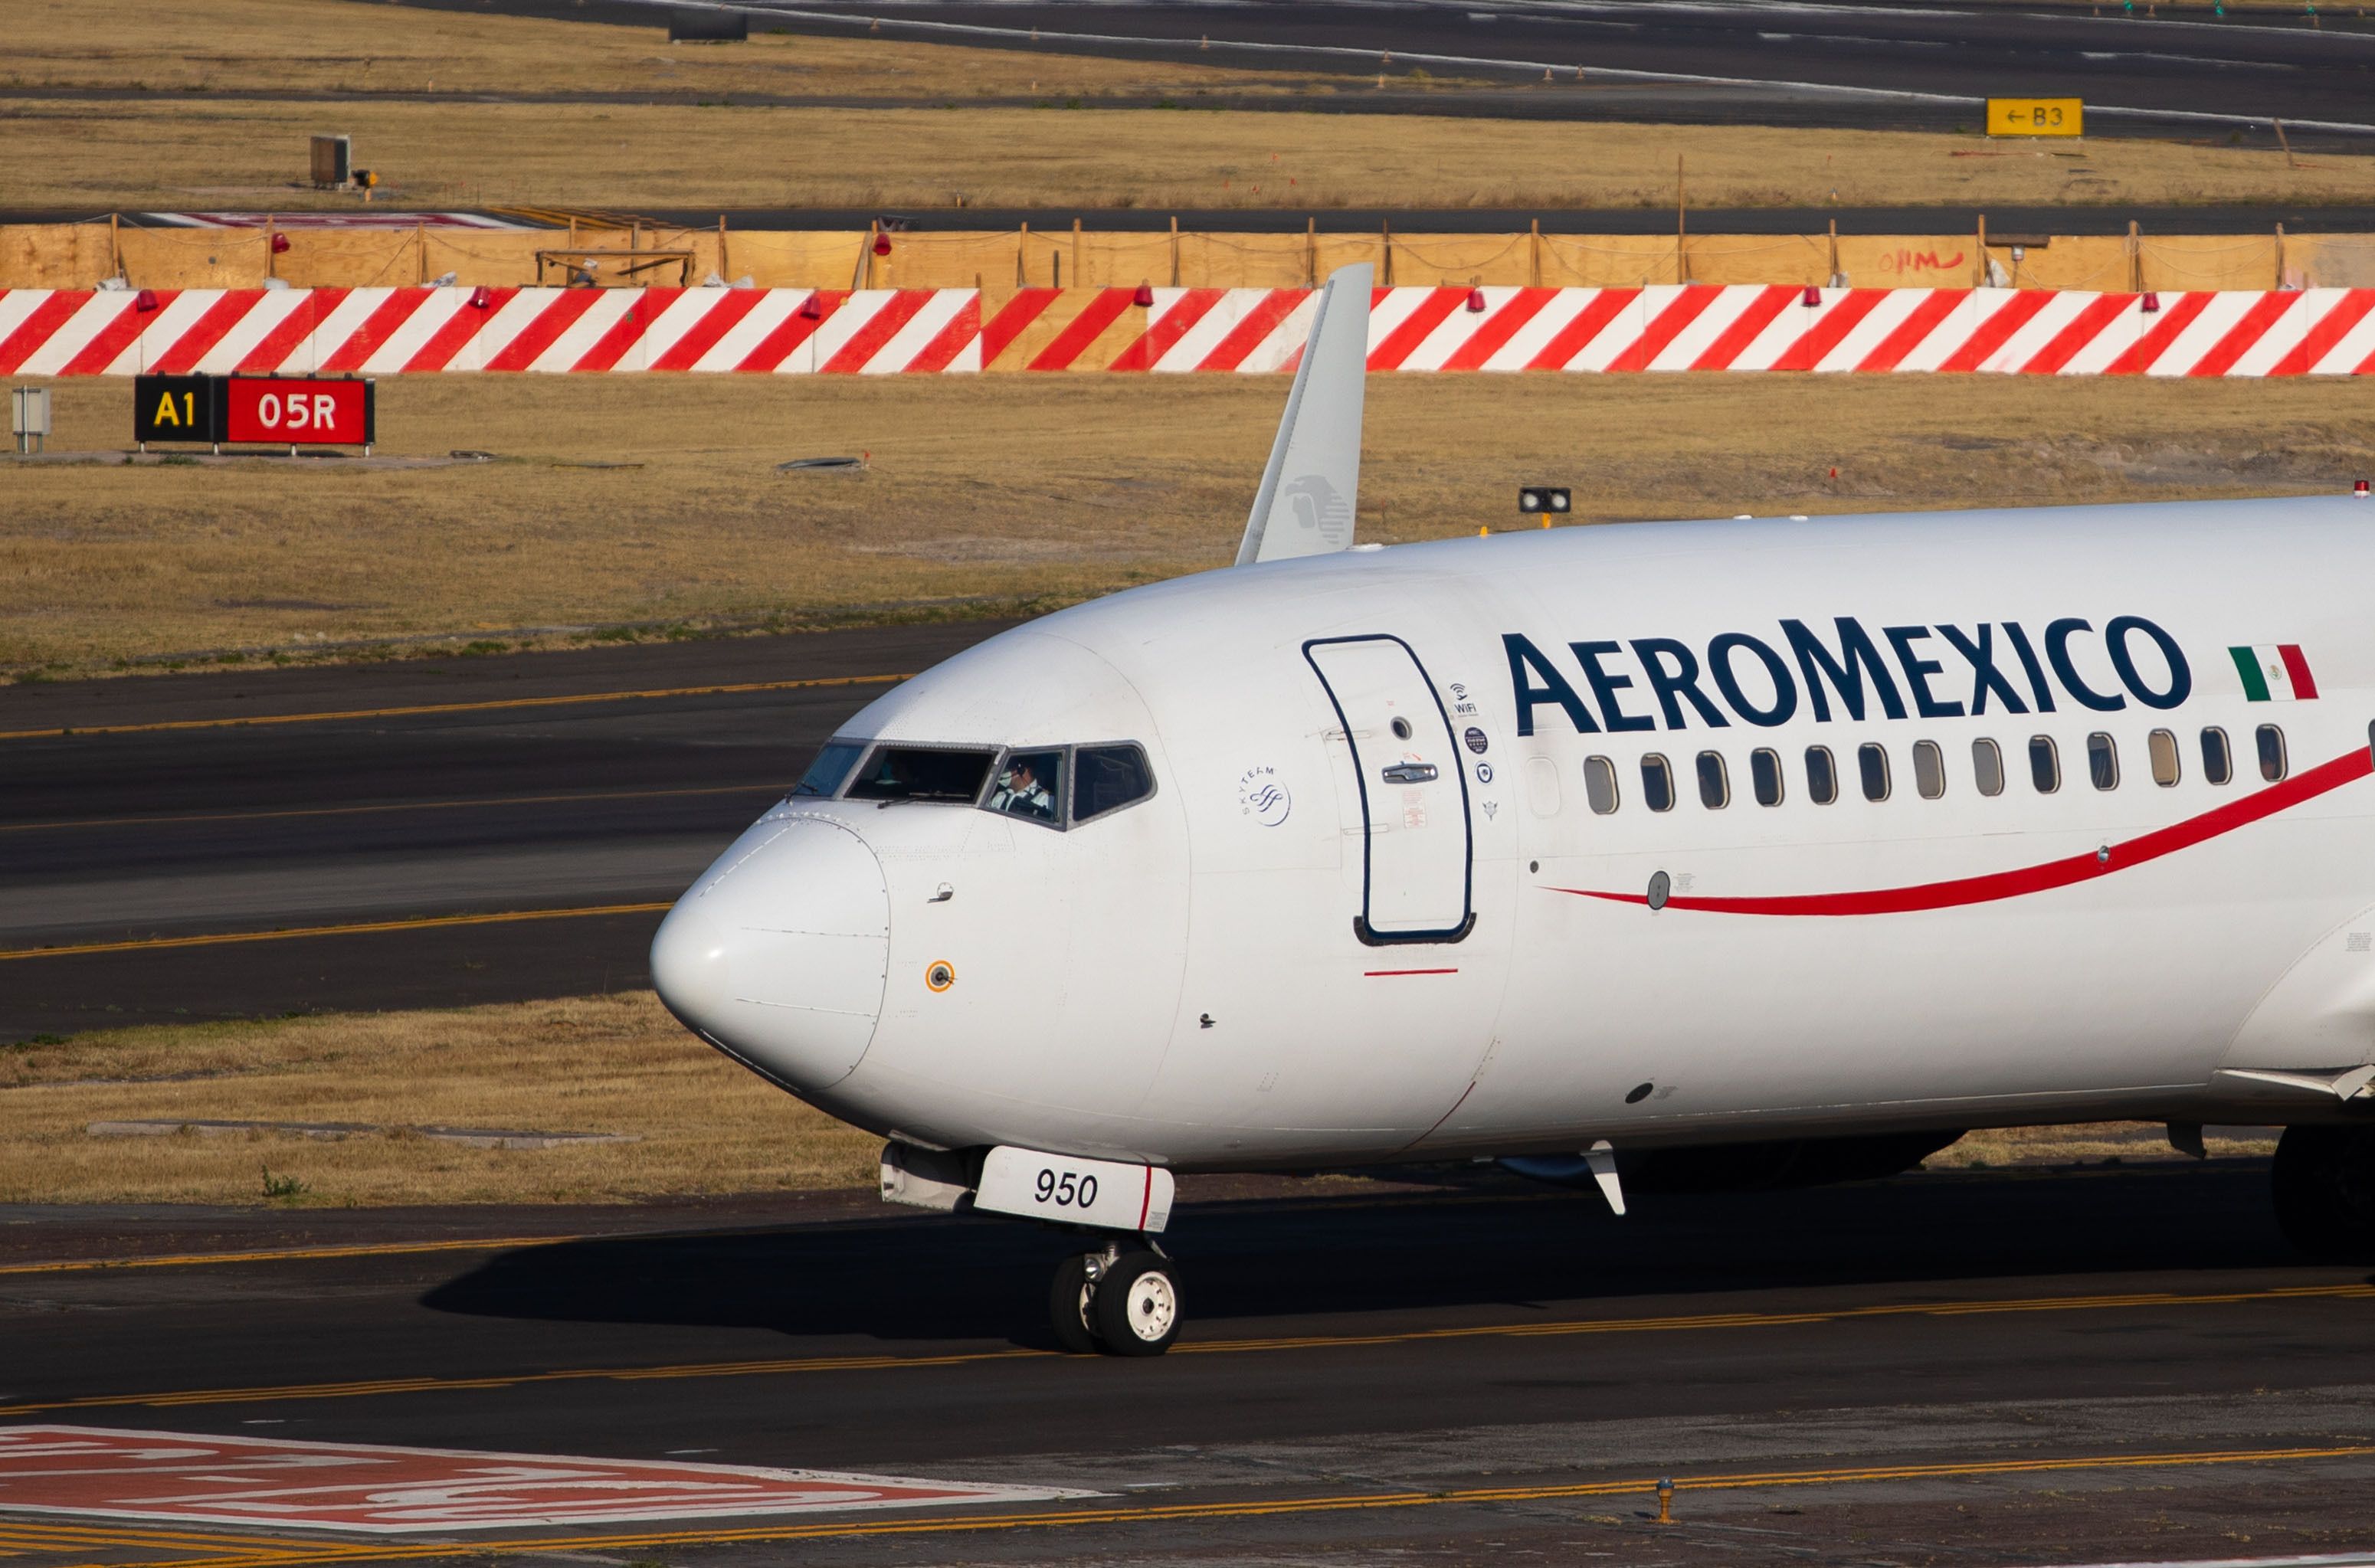 An Aeromexico aircraft